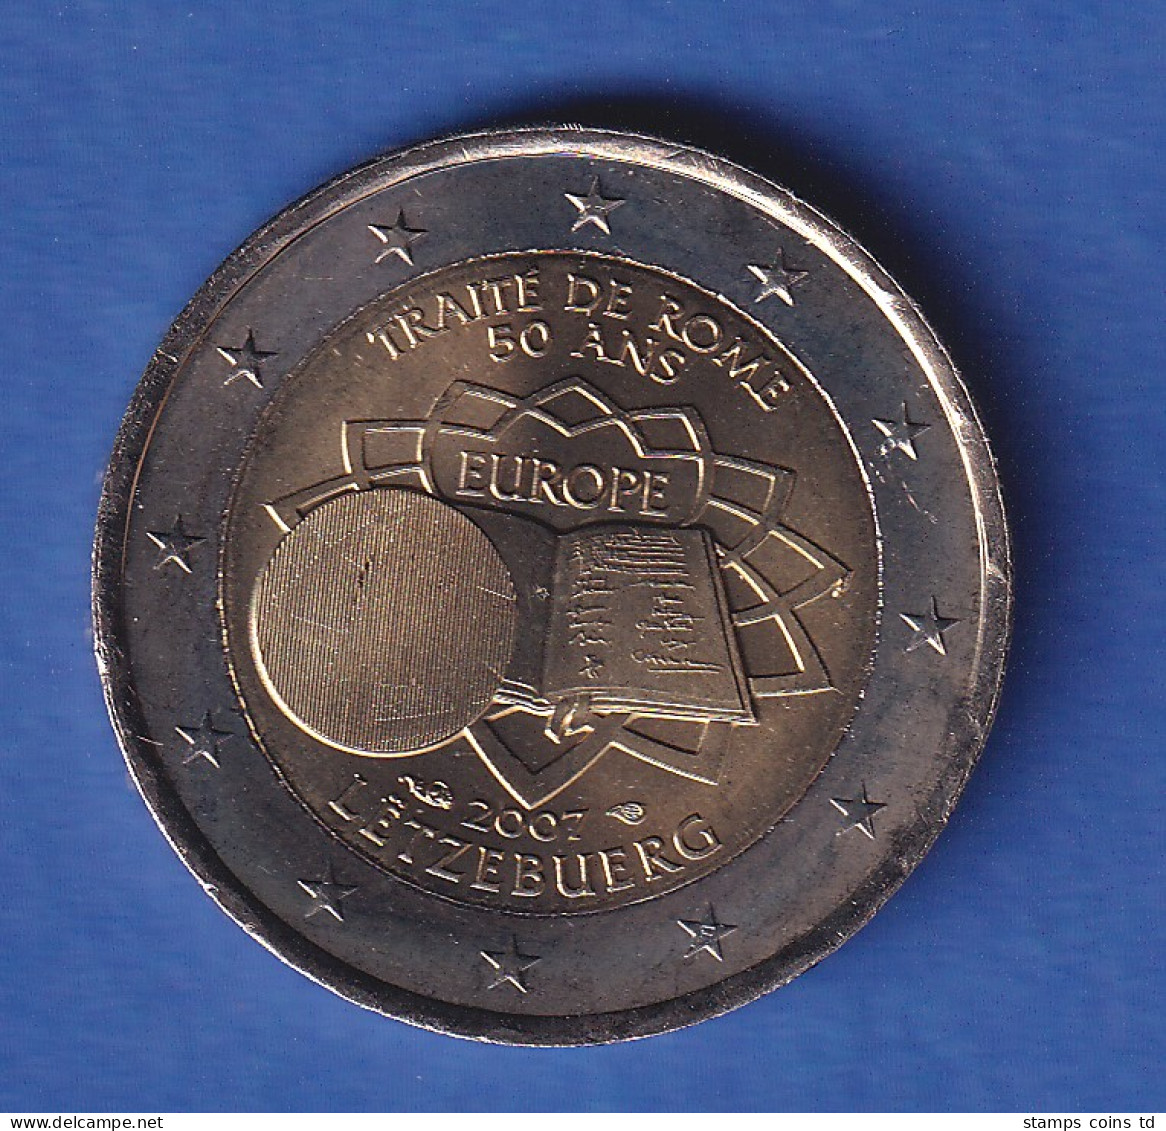 Luxemburg 2007 2-Euro-Sondermünze Römische Verträge Bankfr. Unzirk.  - Luxemburg